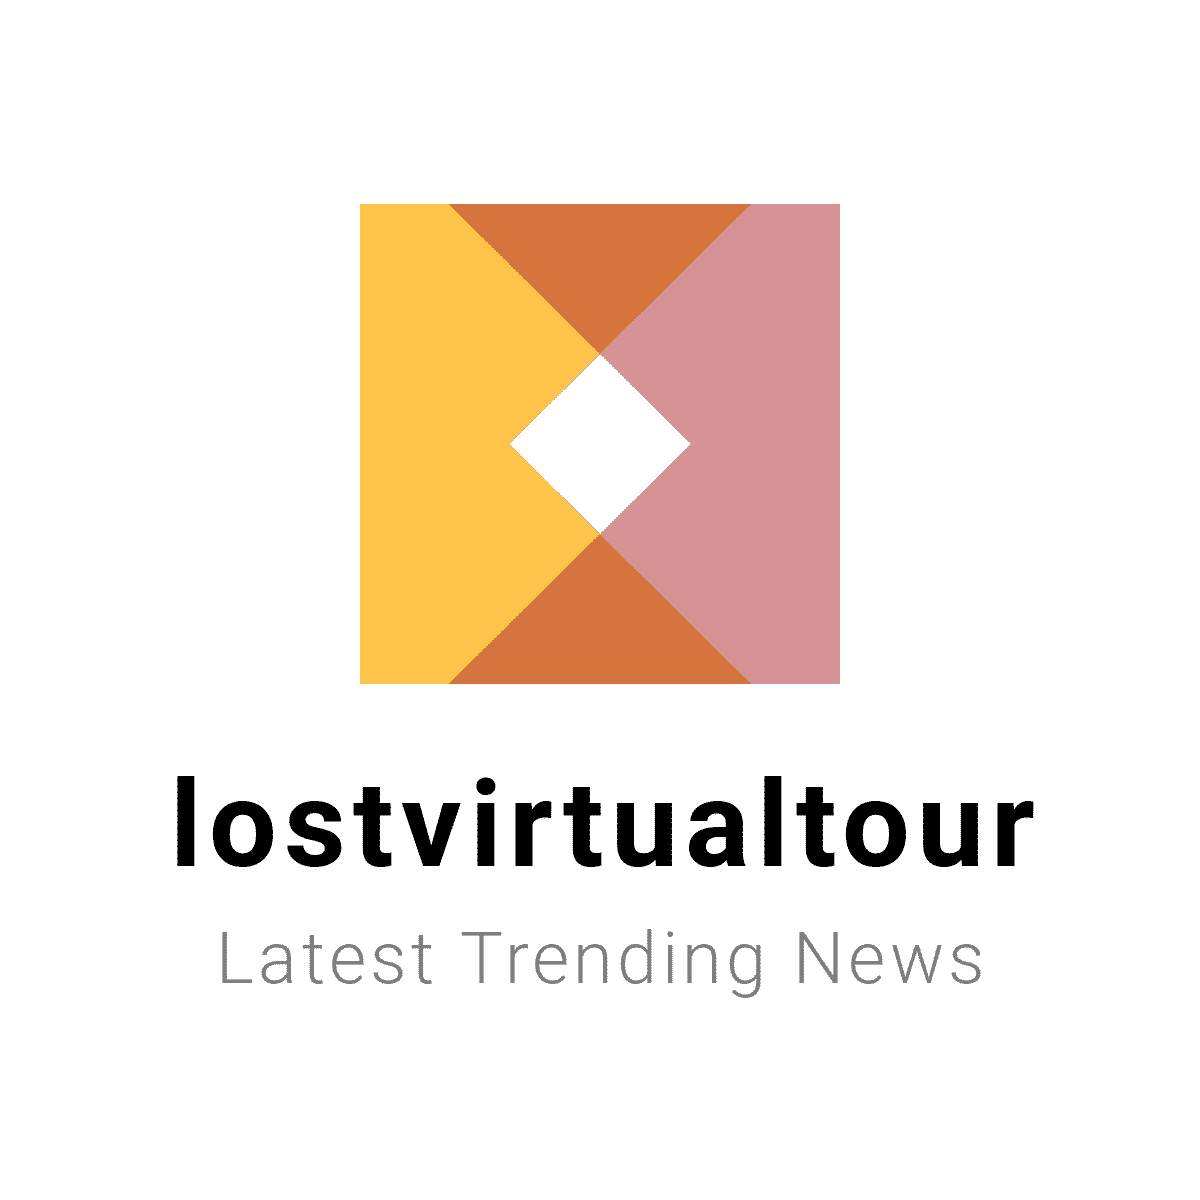 (c) Lostvirtualtour.com